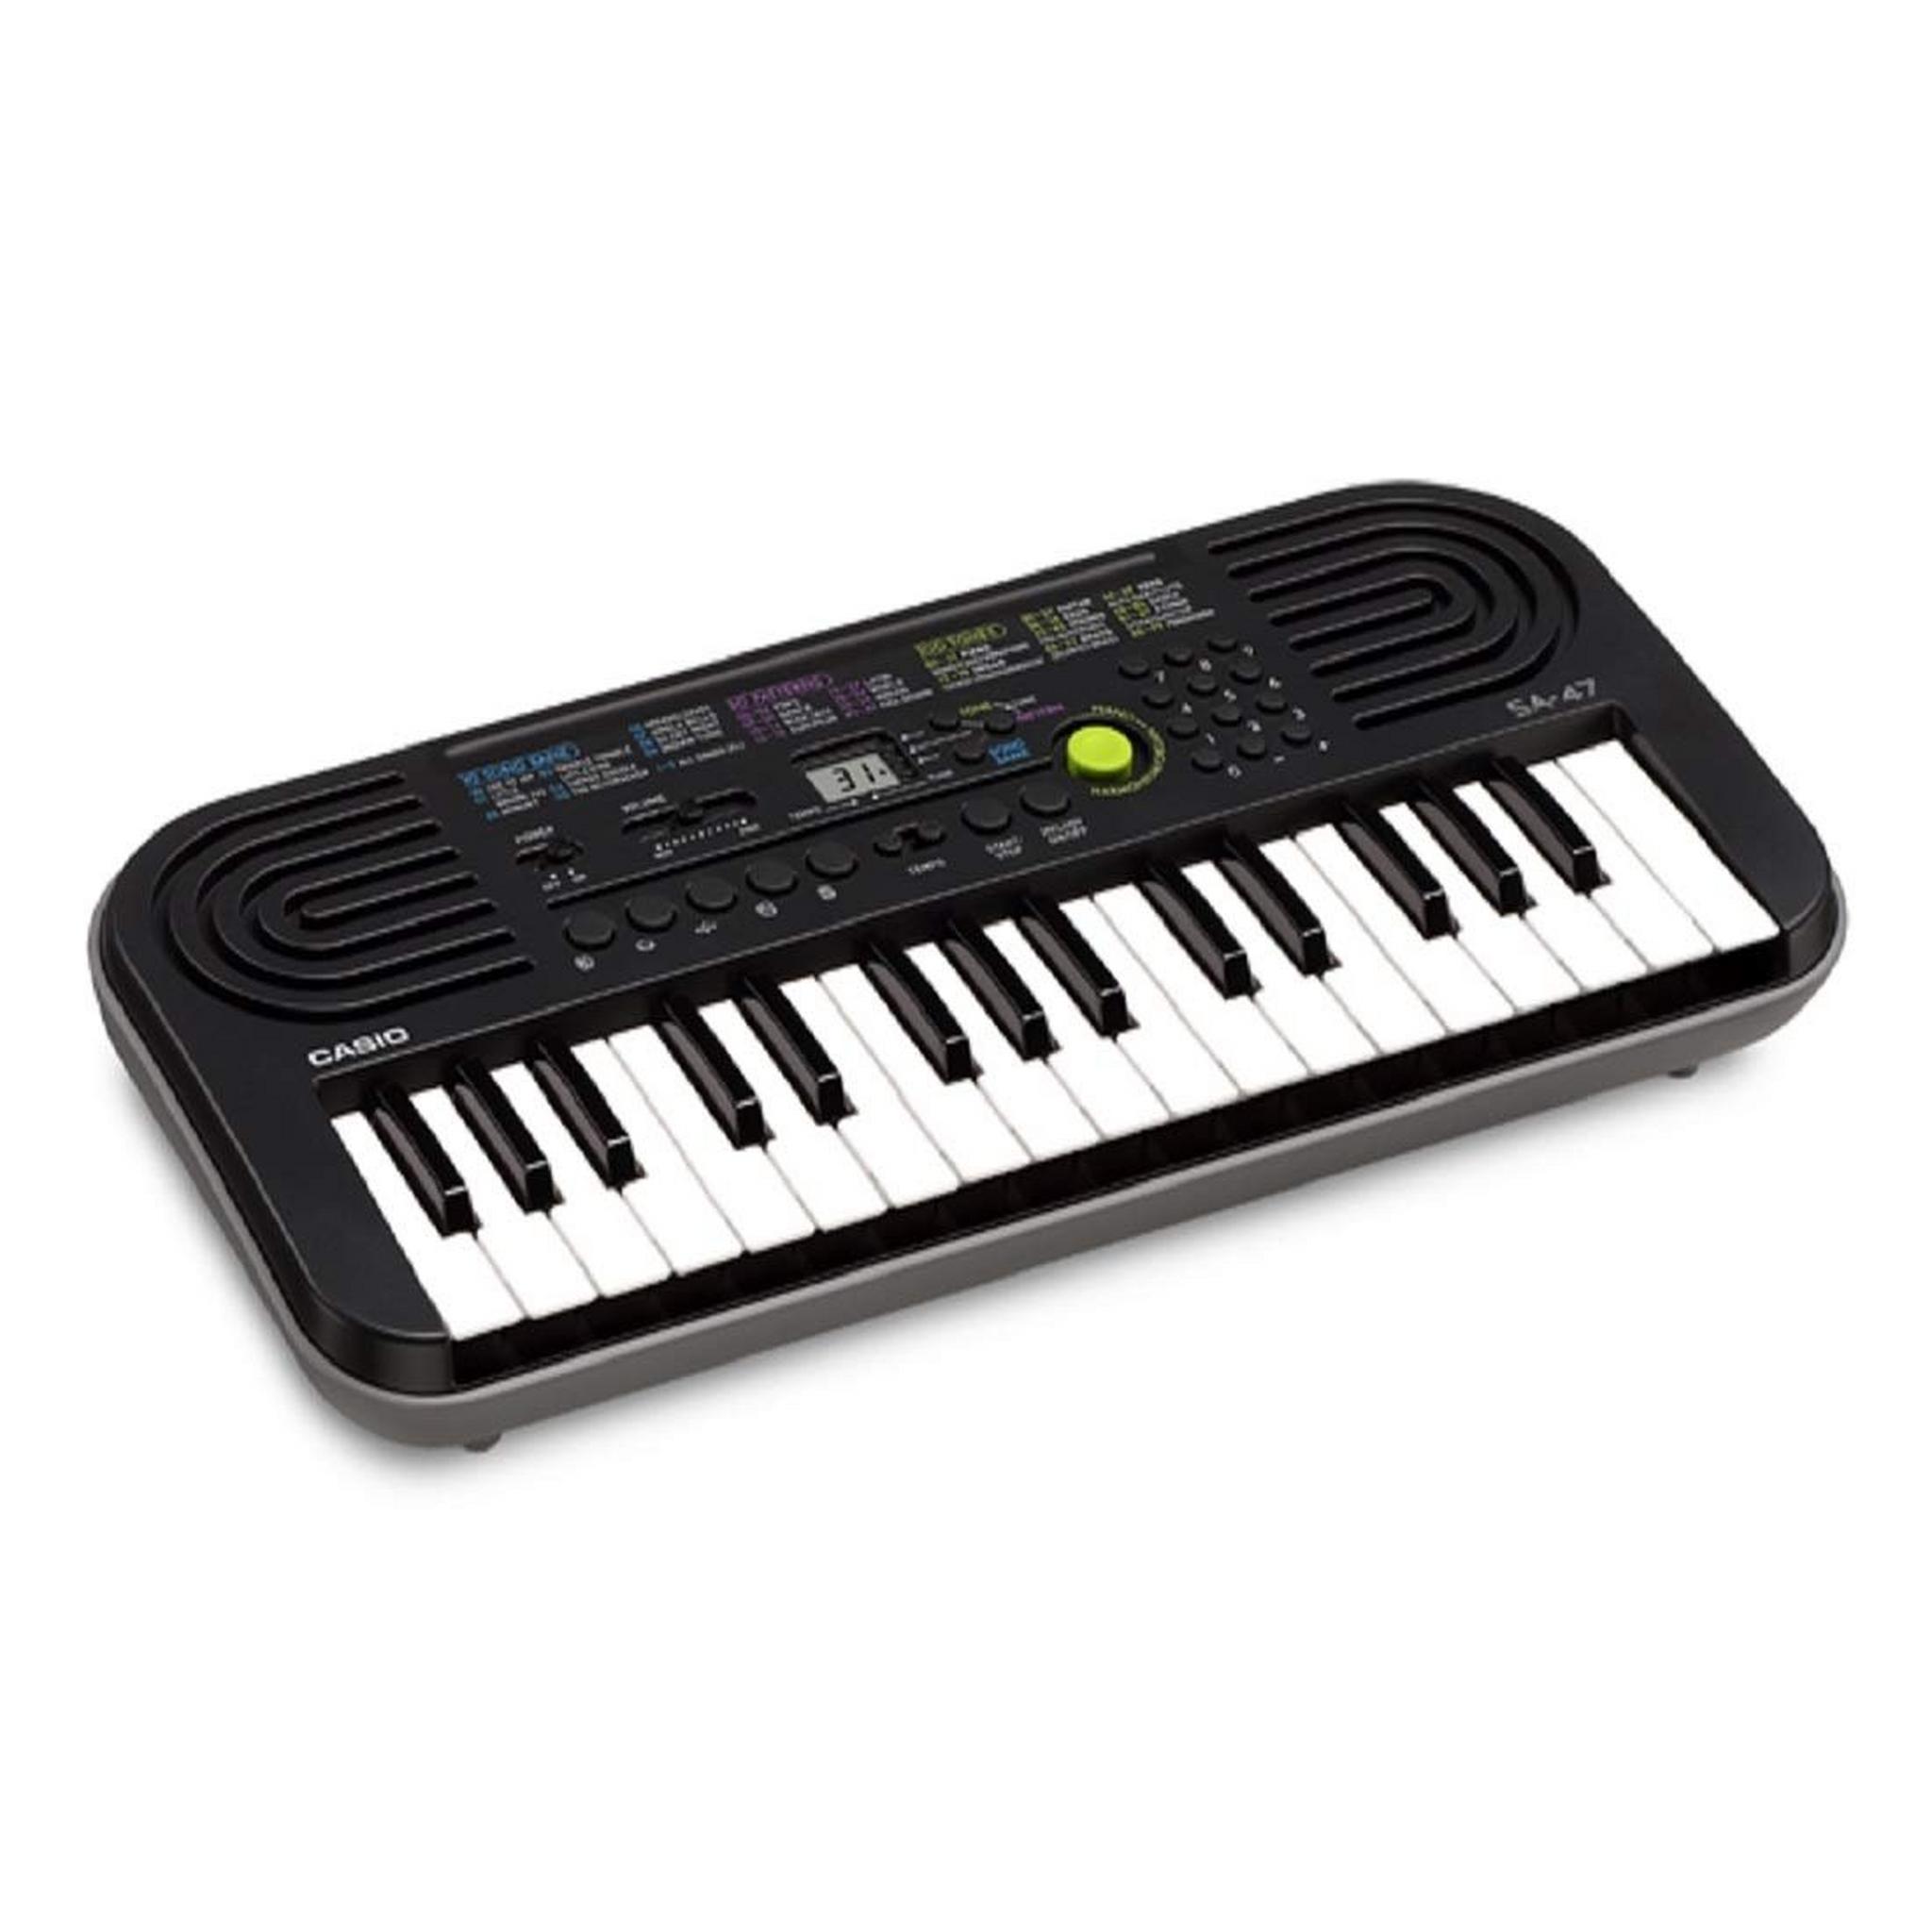 Casio SA47 Keyboard